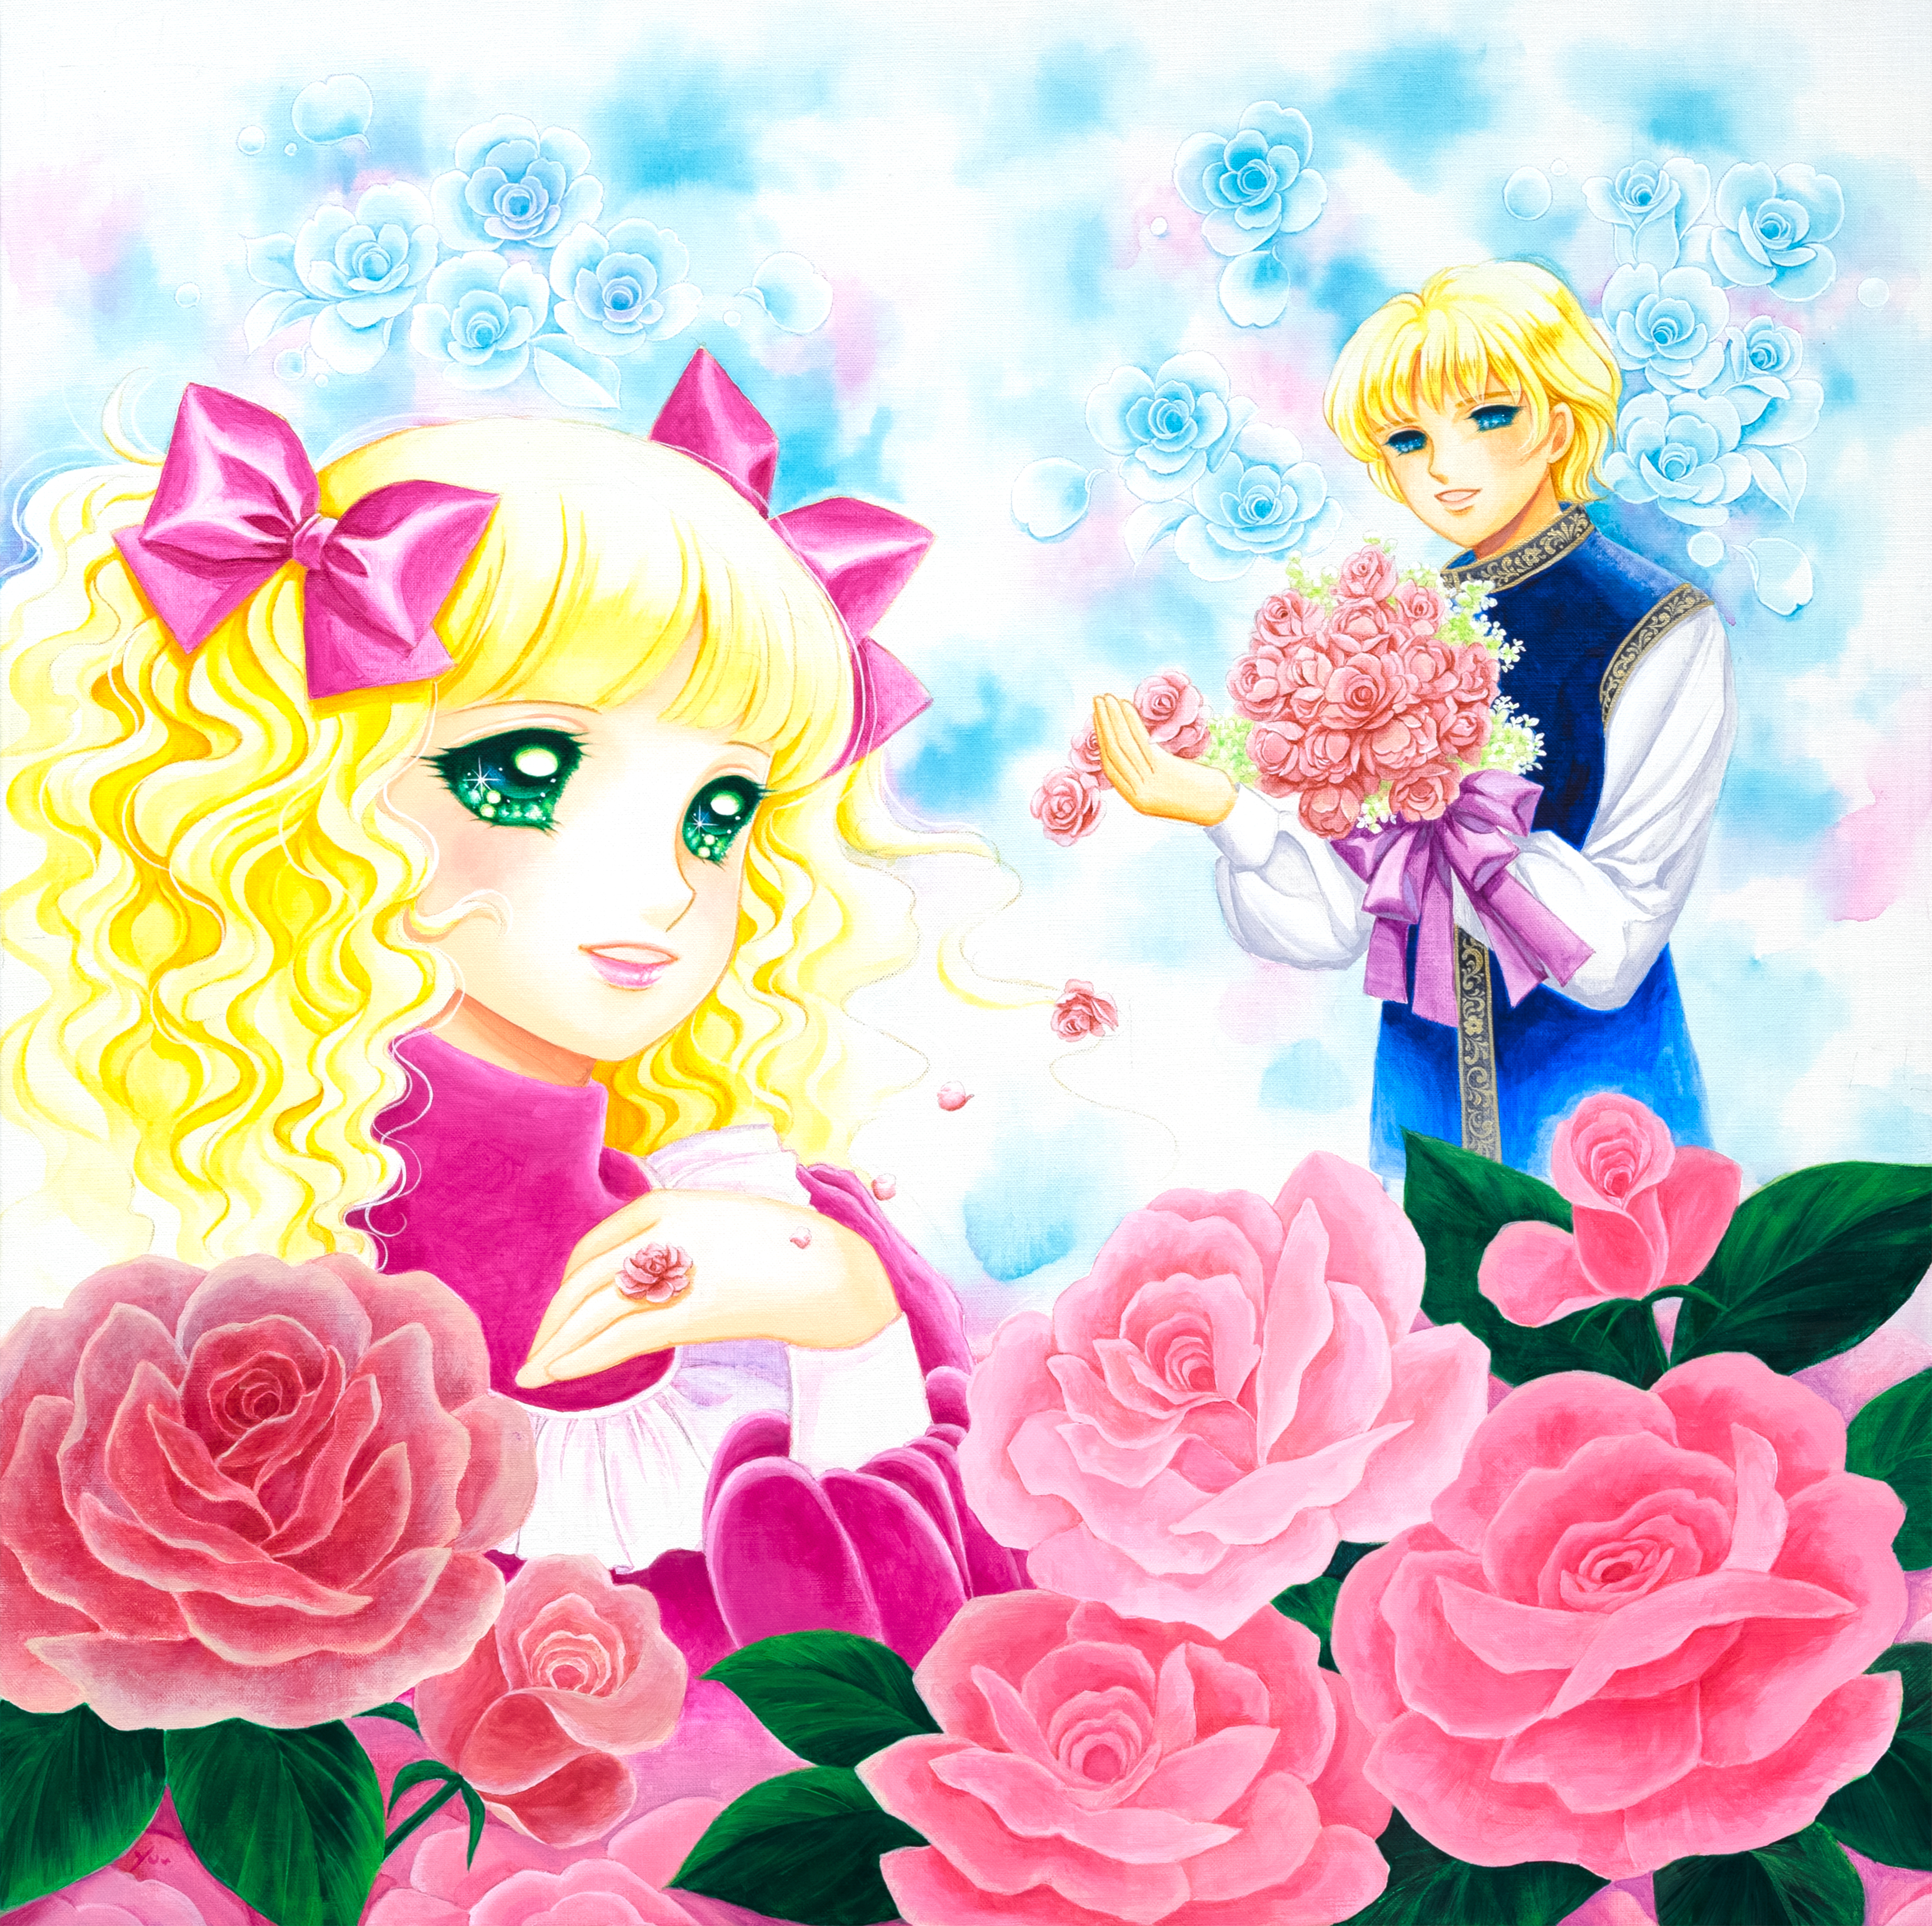 「薔薇の花束と薔薇の指輪を君に♡ / いがらしゆみこ」メイン画像